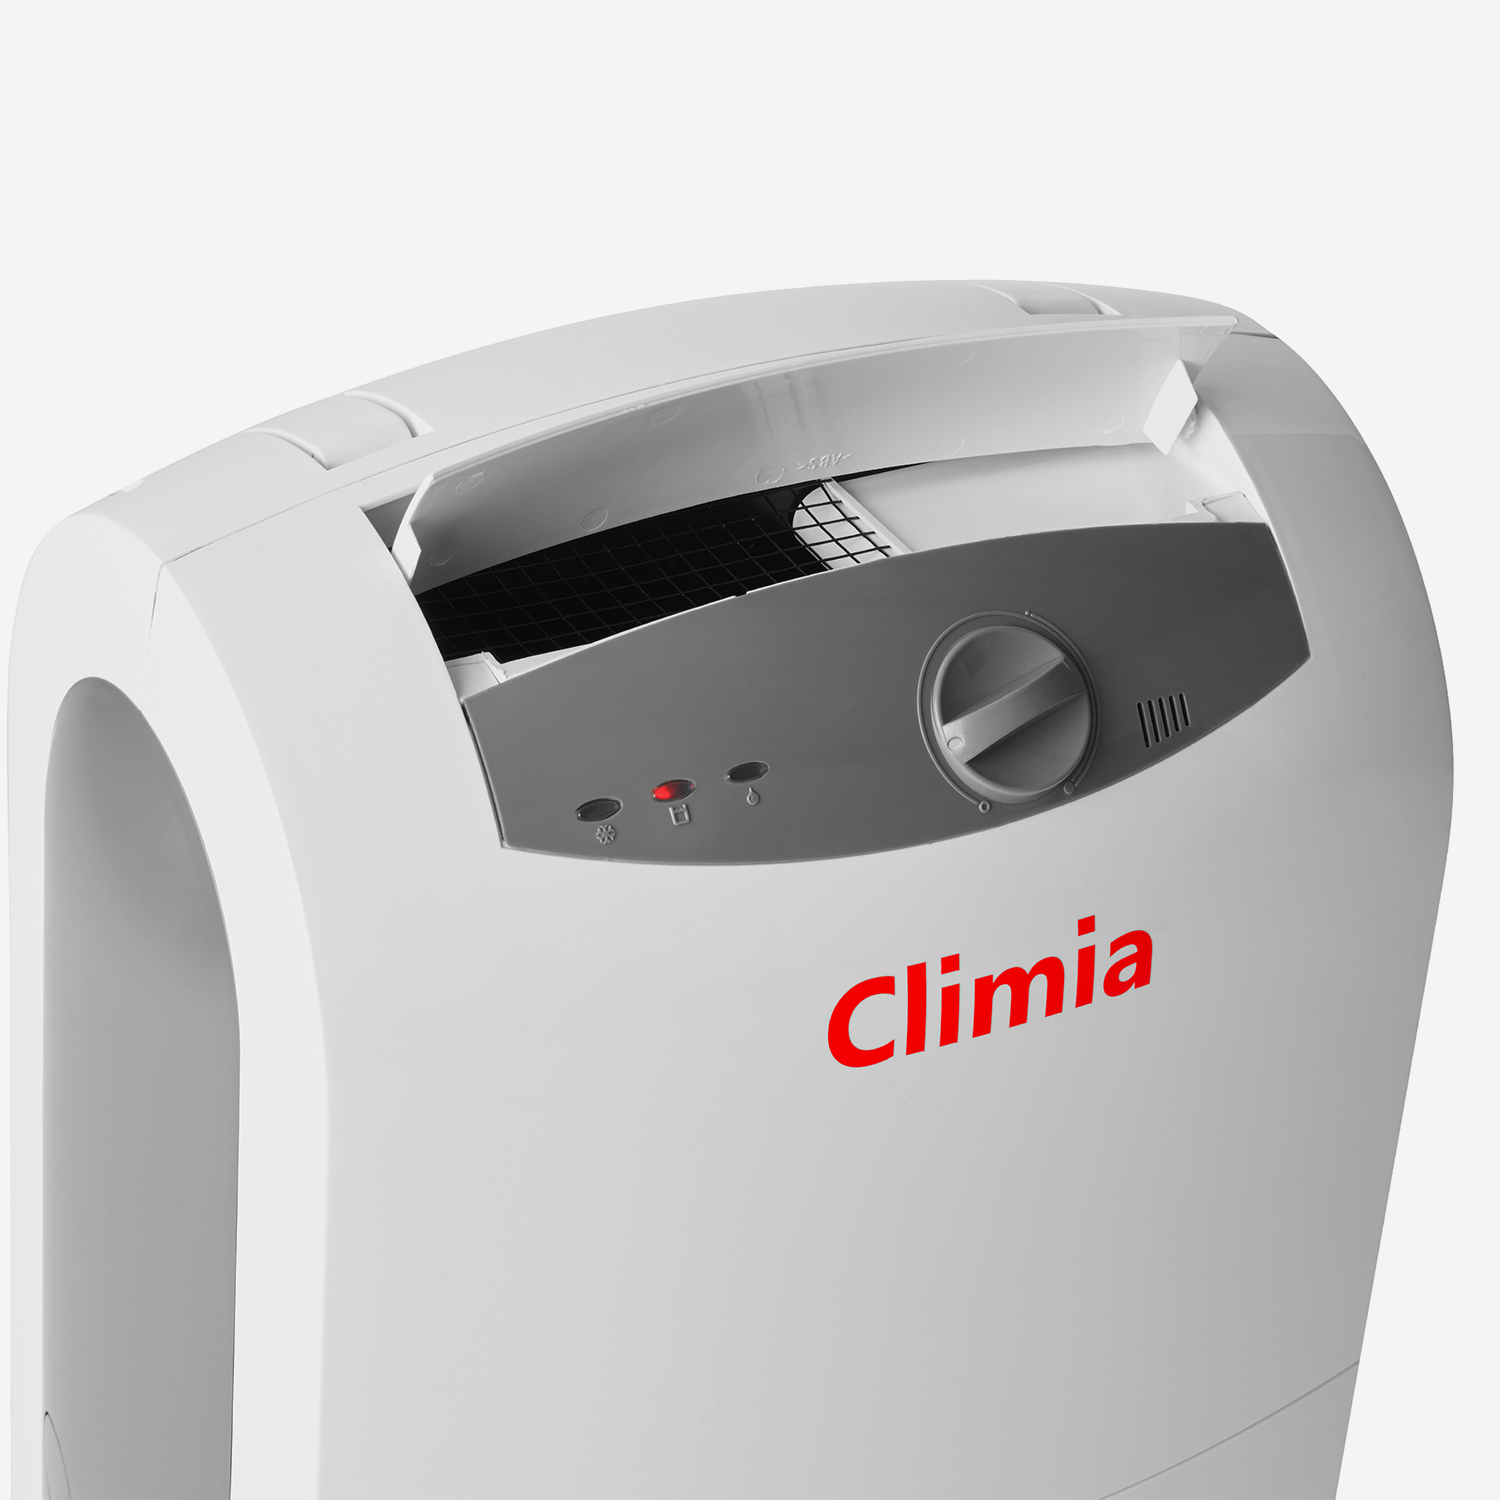 Climia CTK 190 - Hilfe bei akuten Notfällen wie Wasserschäden oder Schimmelpilzbefall